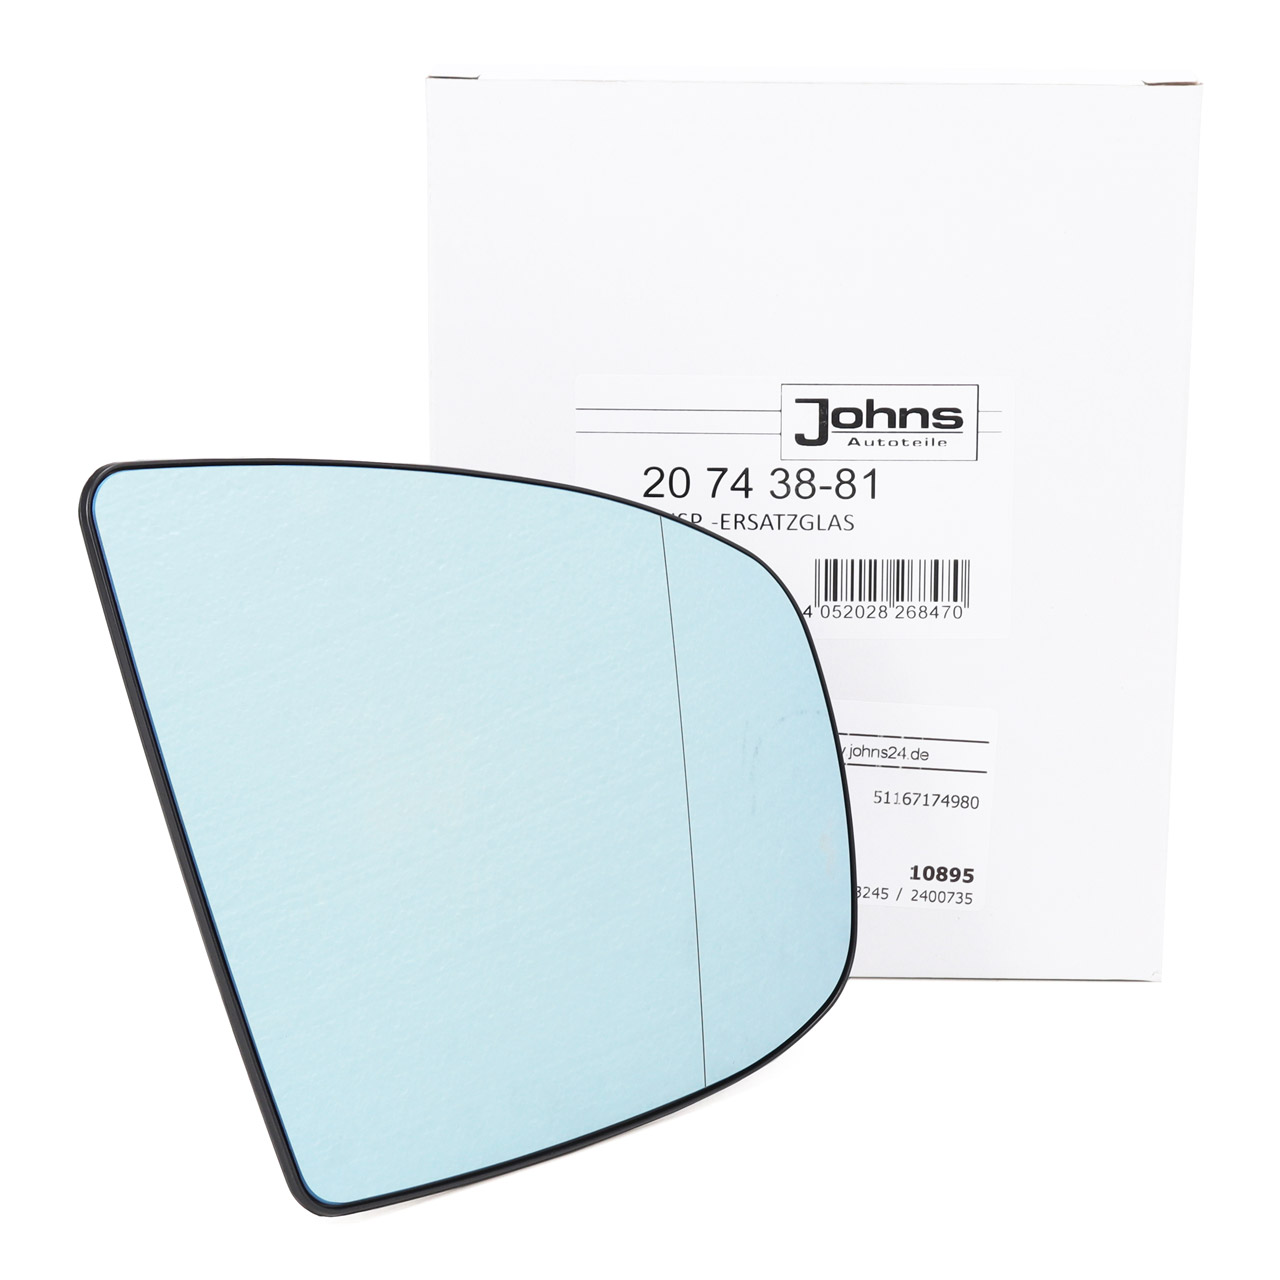 JOHNS 207438-81 Außenspiegel Spiegelglas ELEKTRISCH BMW X5 E70 X6 E71 rechts 51167174982